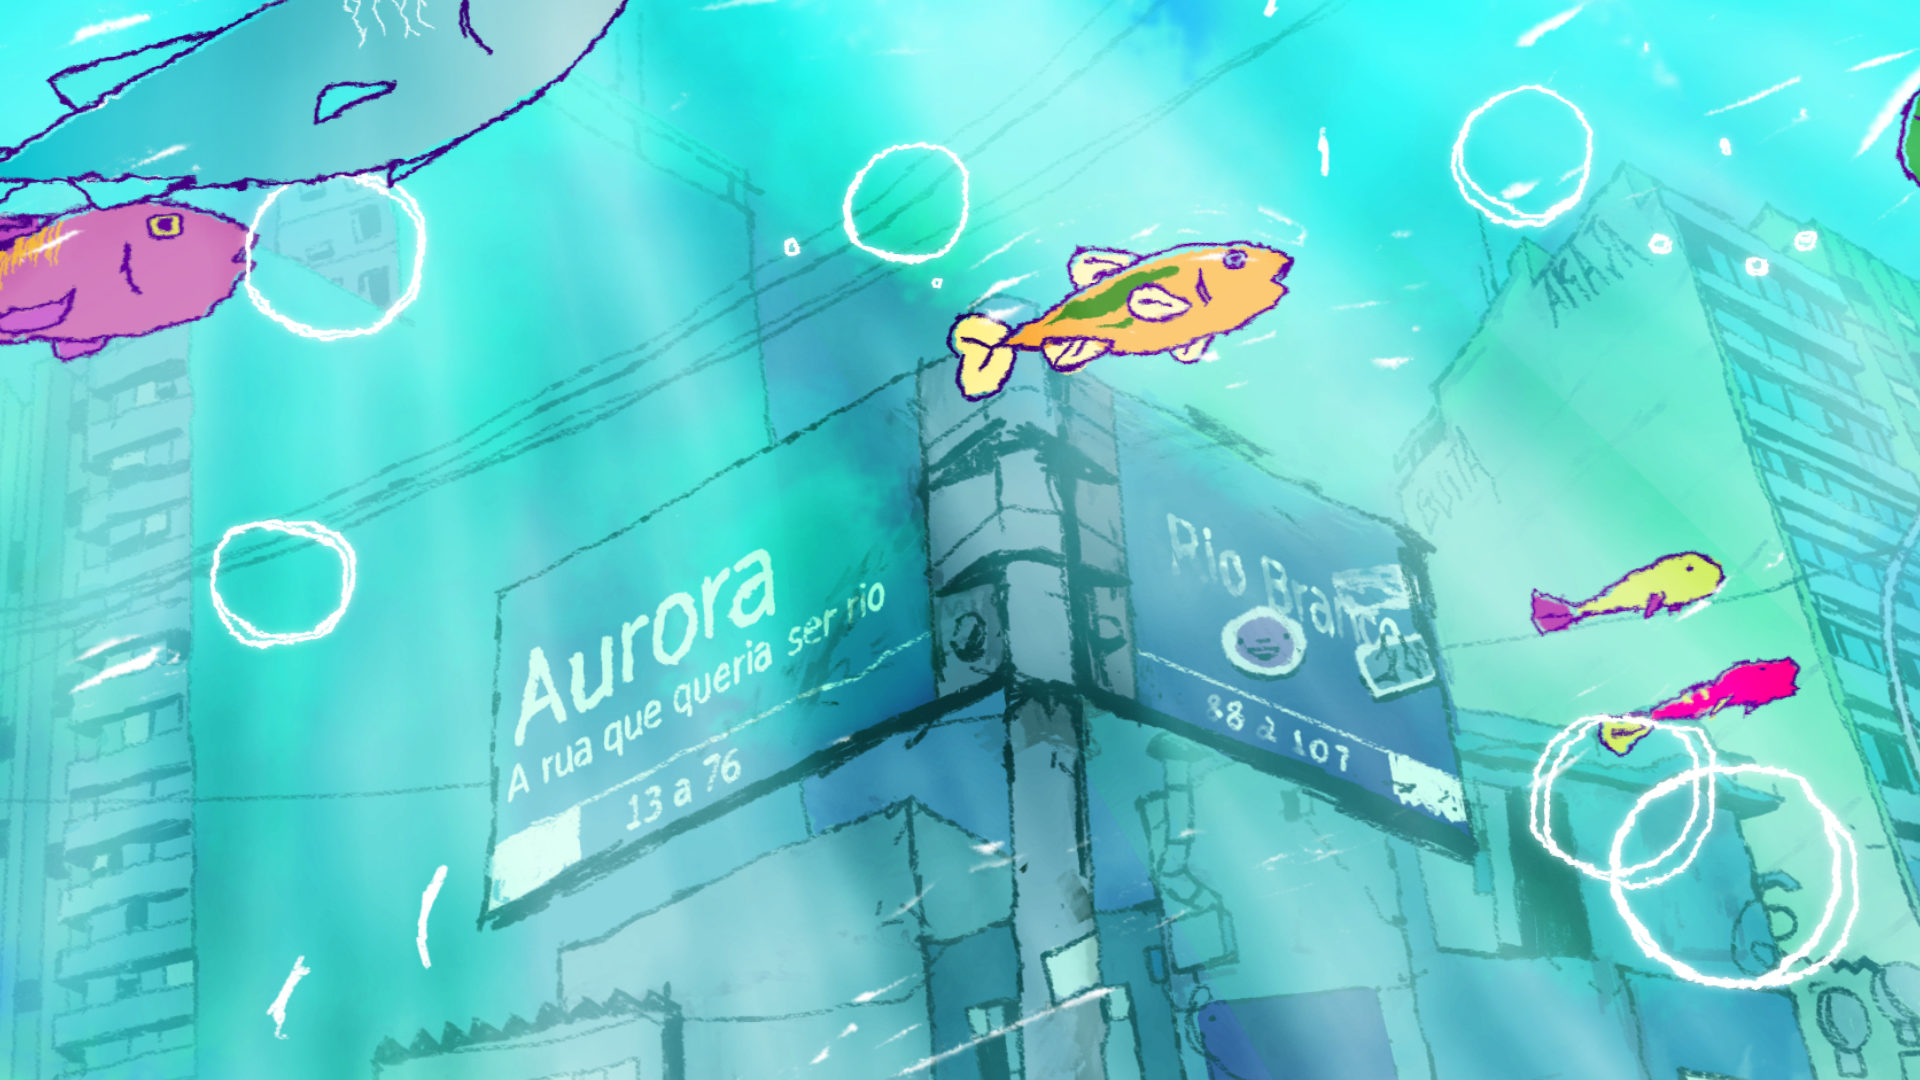 Aurora - A Rua que queria ser um rio.